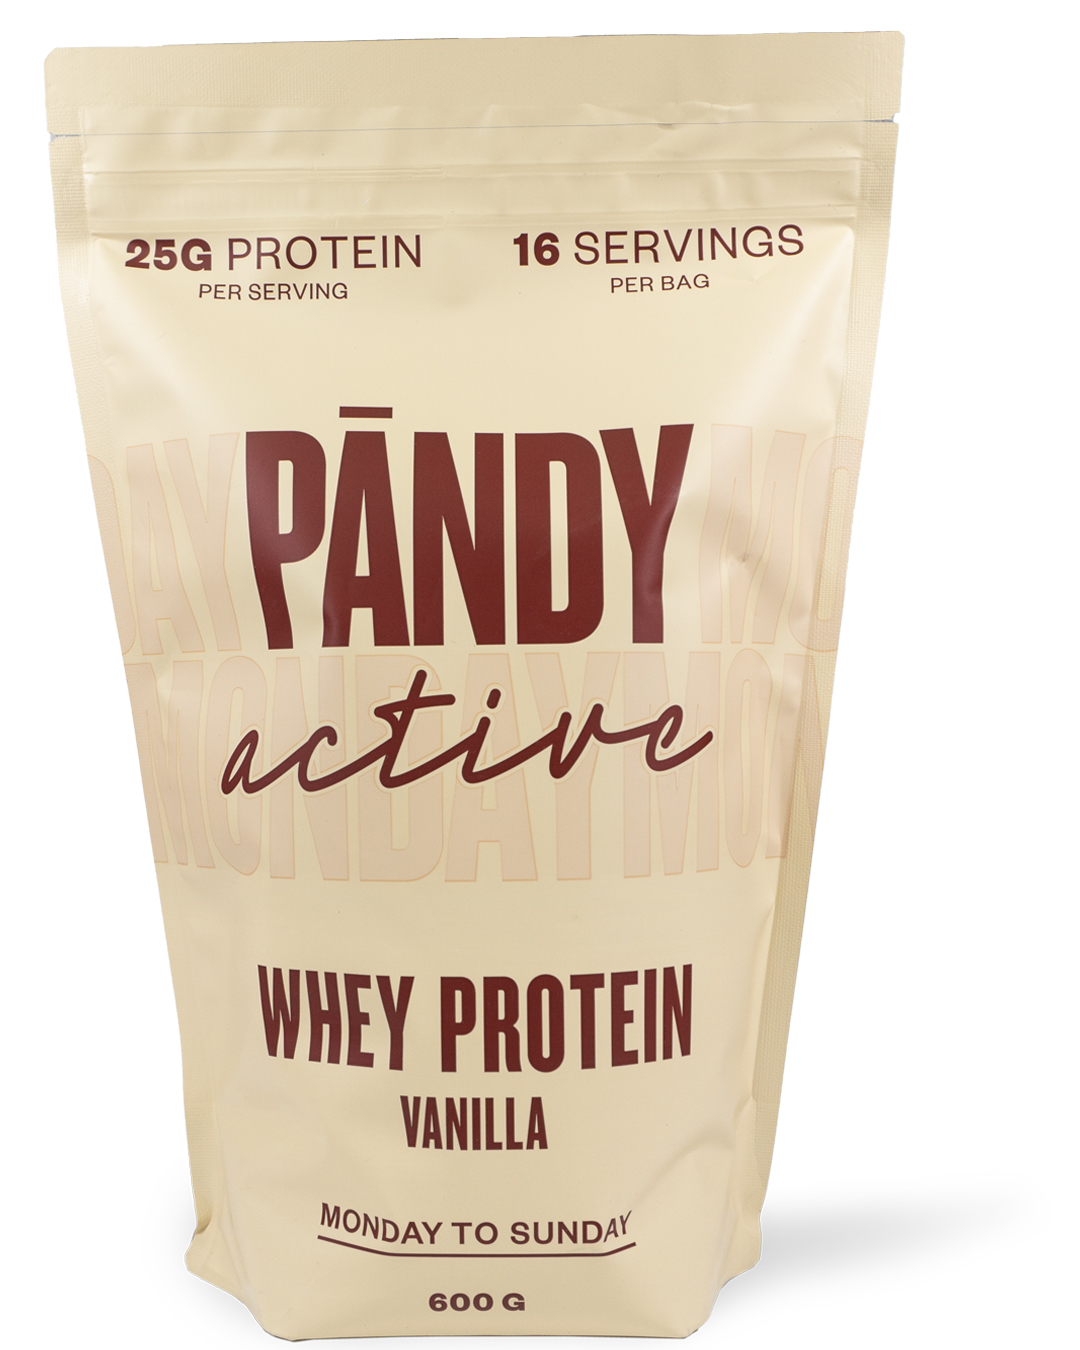 Pändy Whey Protein Vanilla 600 g